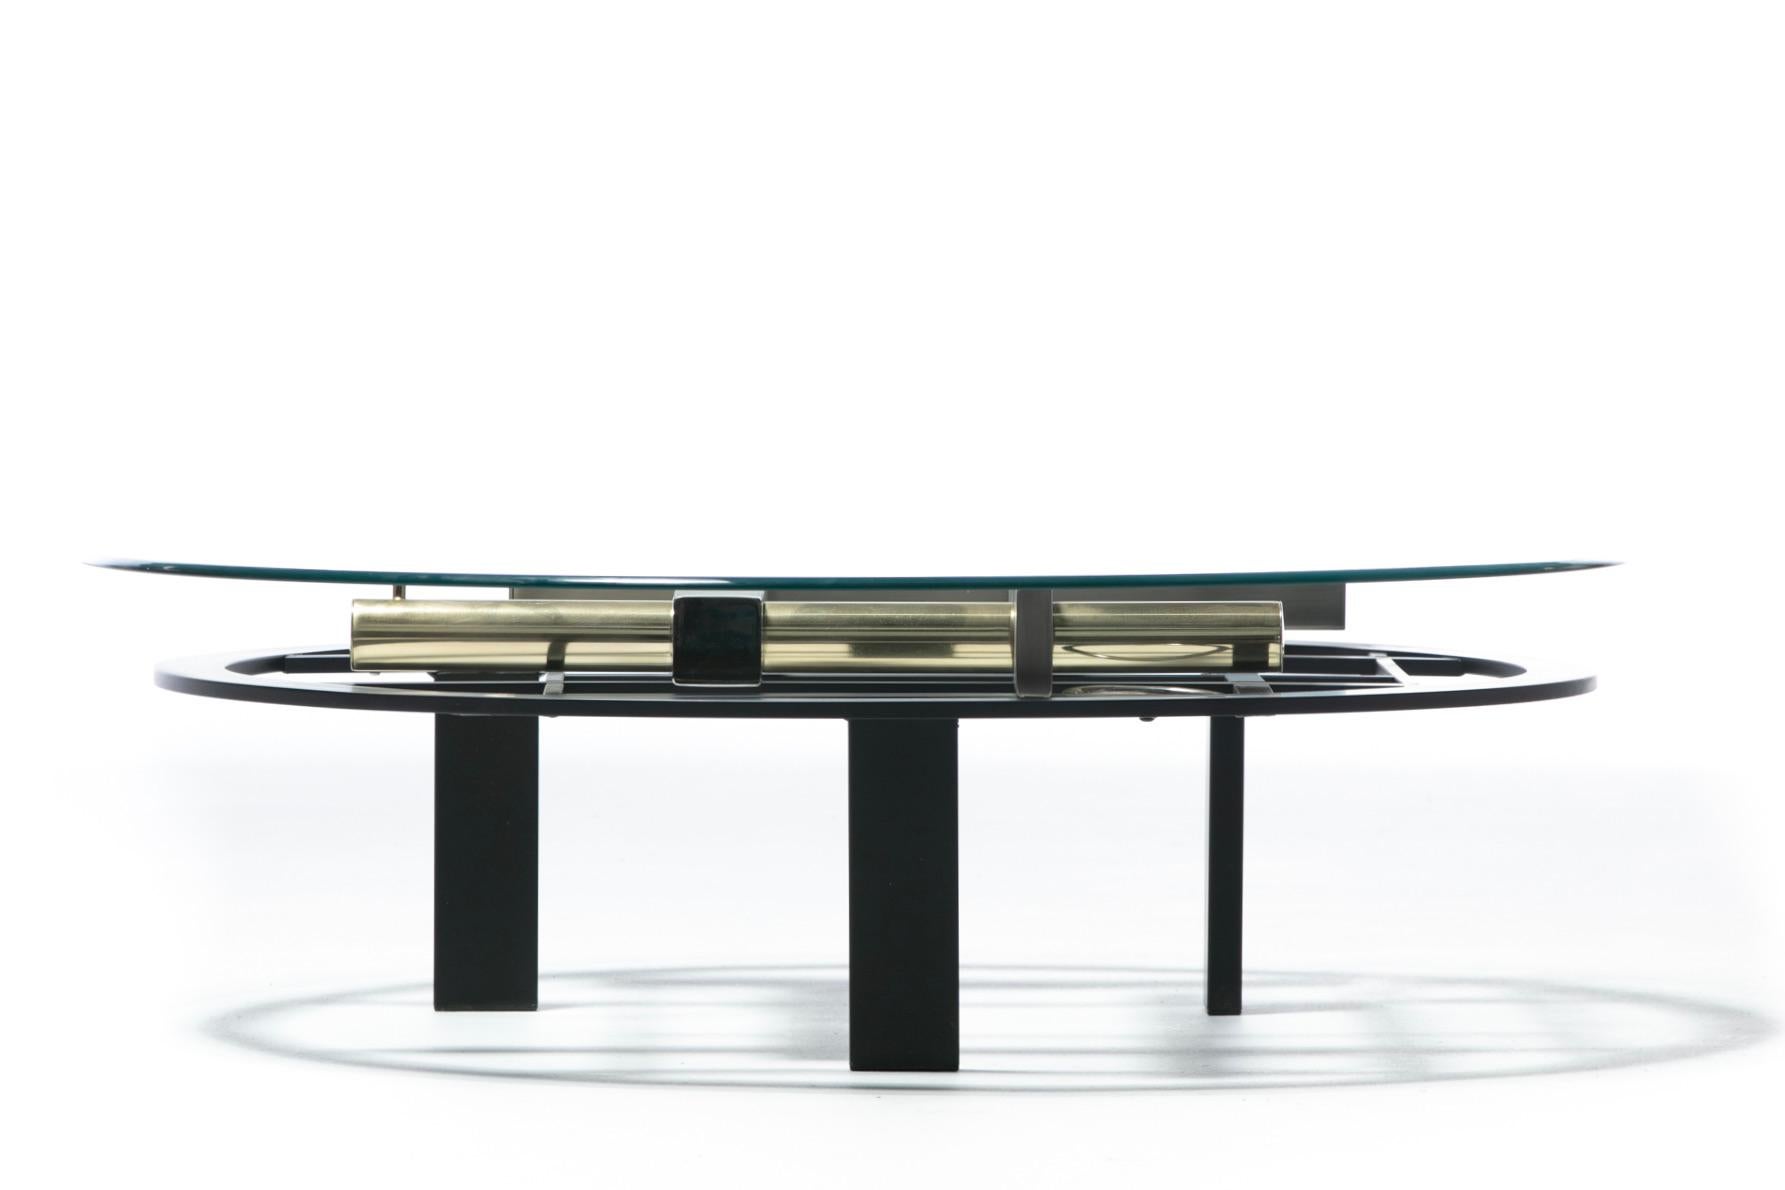 Table basse en métal mixte post-moderne des années 1980 aux formes géométriques, réalisée par le designer Kaizo Oto pour le Design Institute of America. Une excellente façon d'intégrer ou de rassembler des métaux mixtes dans votre espace, cette